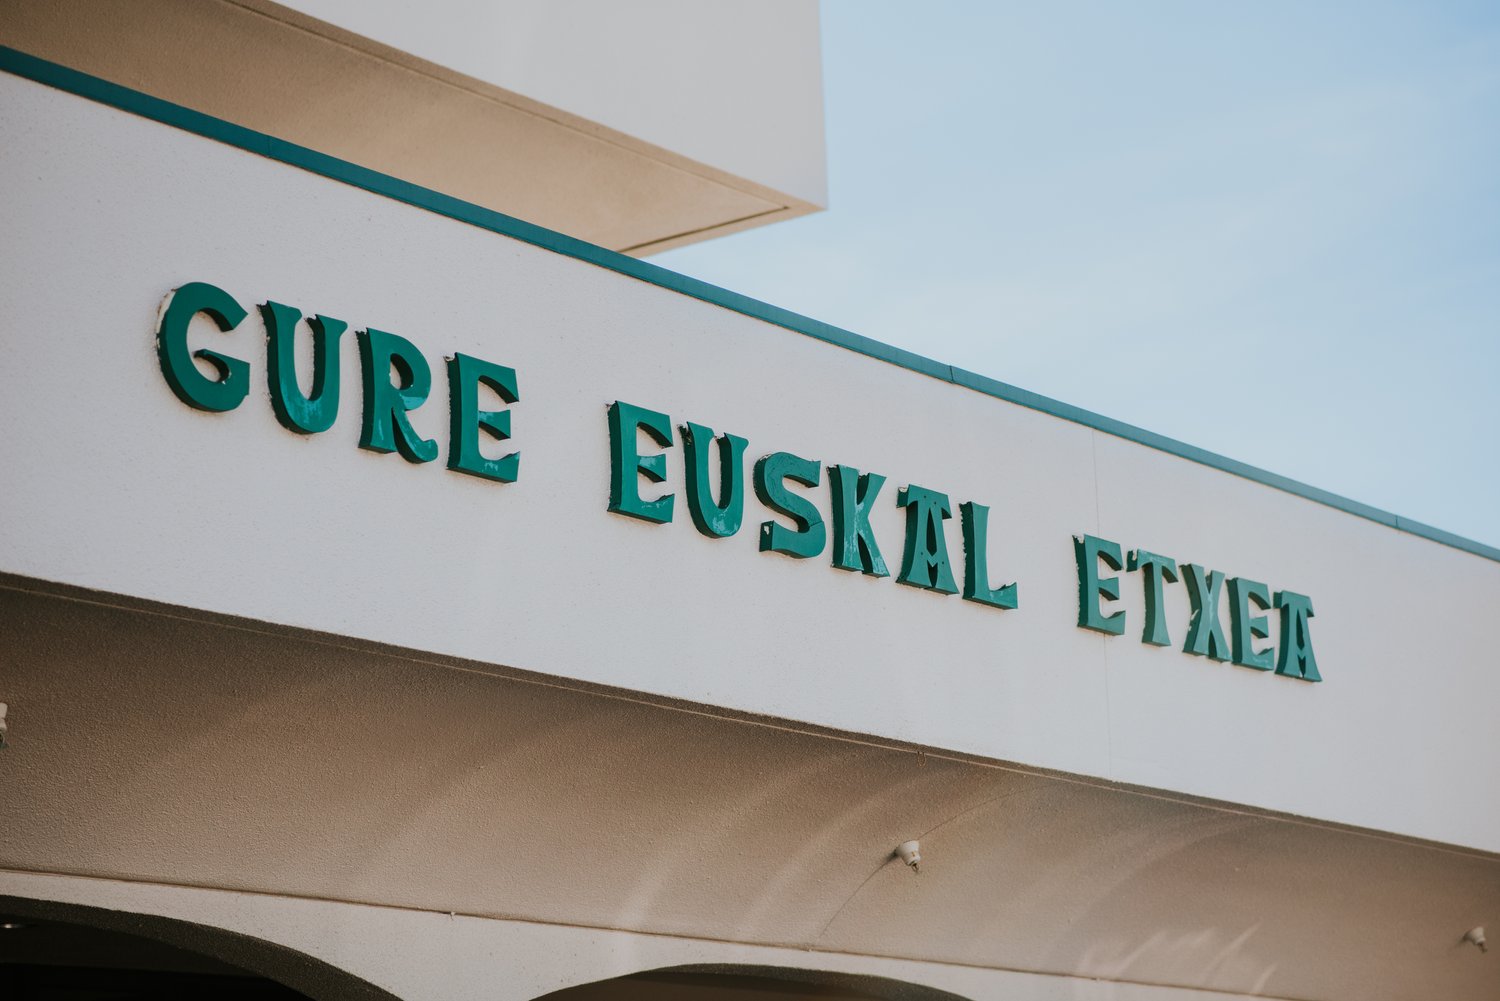 Basque Cultural Center